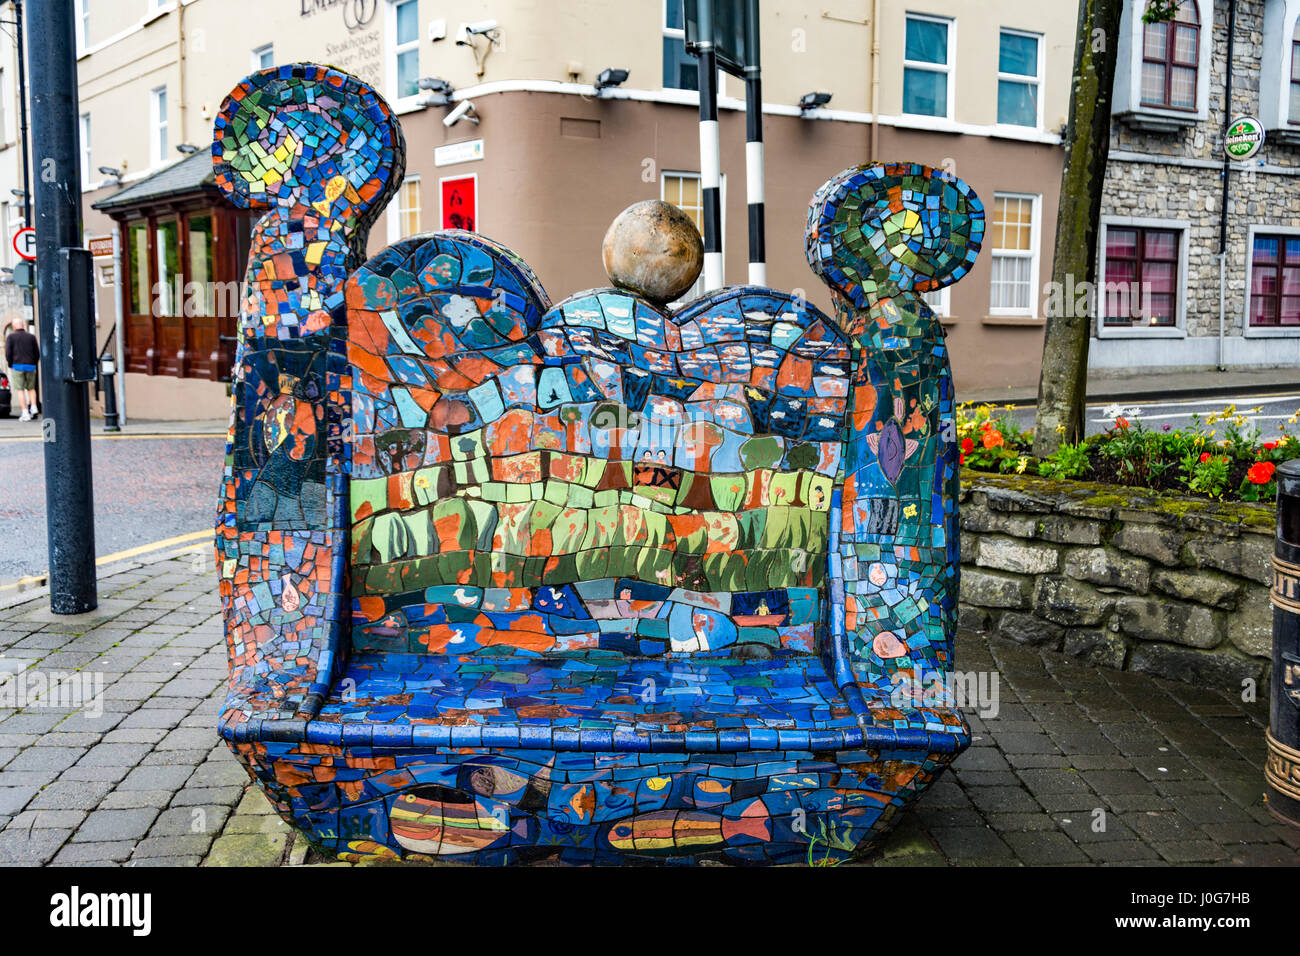 Banc de mosaïque, conçu par les enfants et les artistes. Sligo city, Comté de Sligo, Irlande Banque D'Images